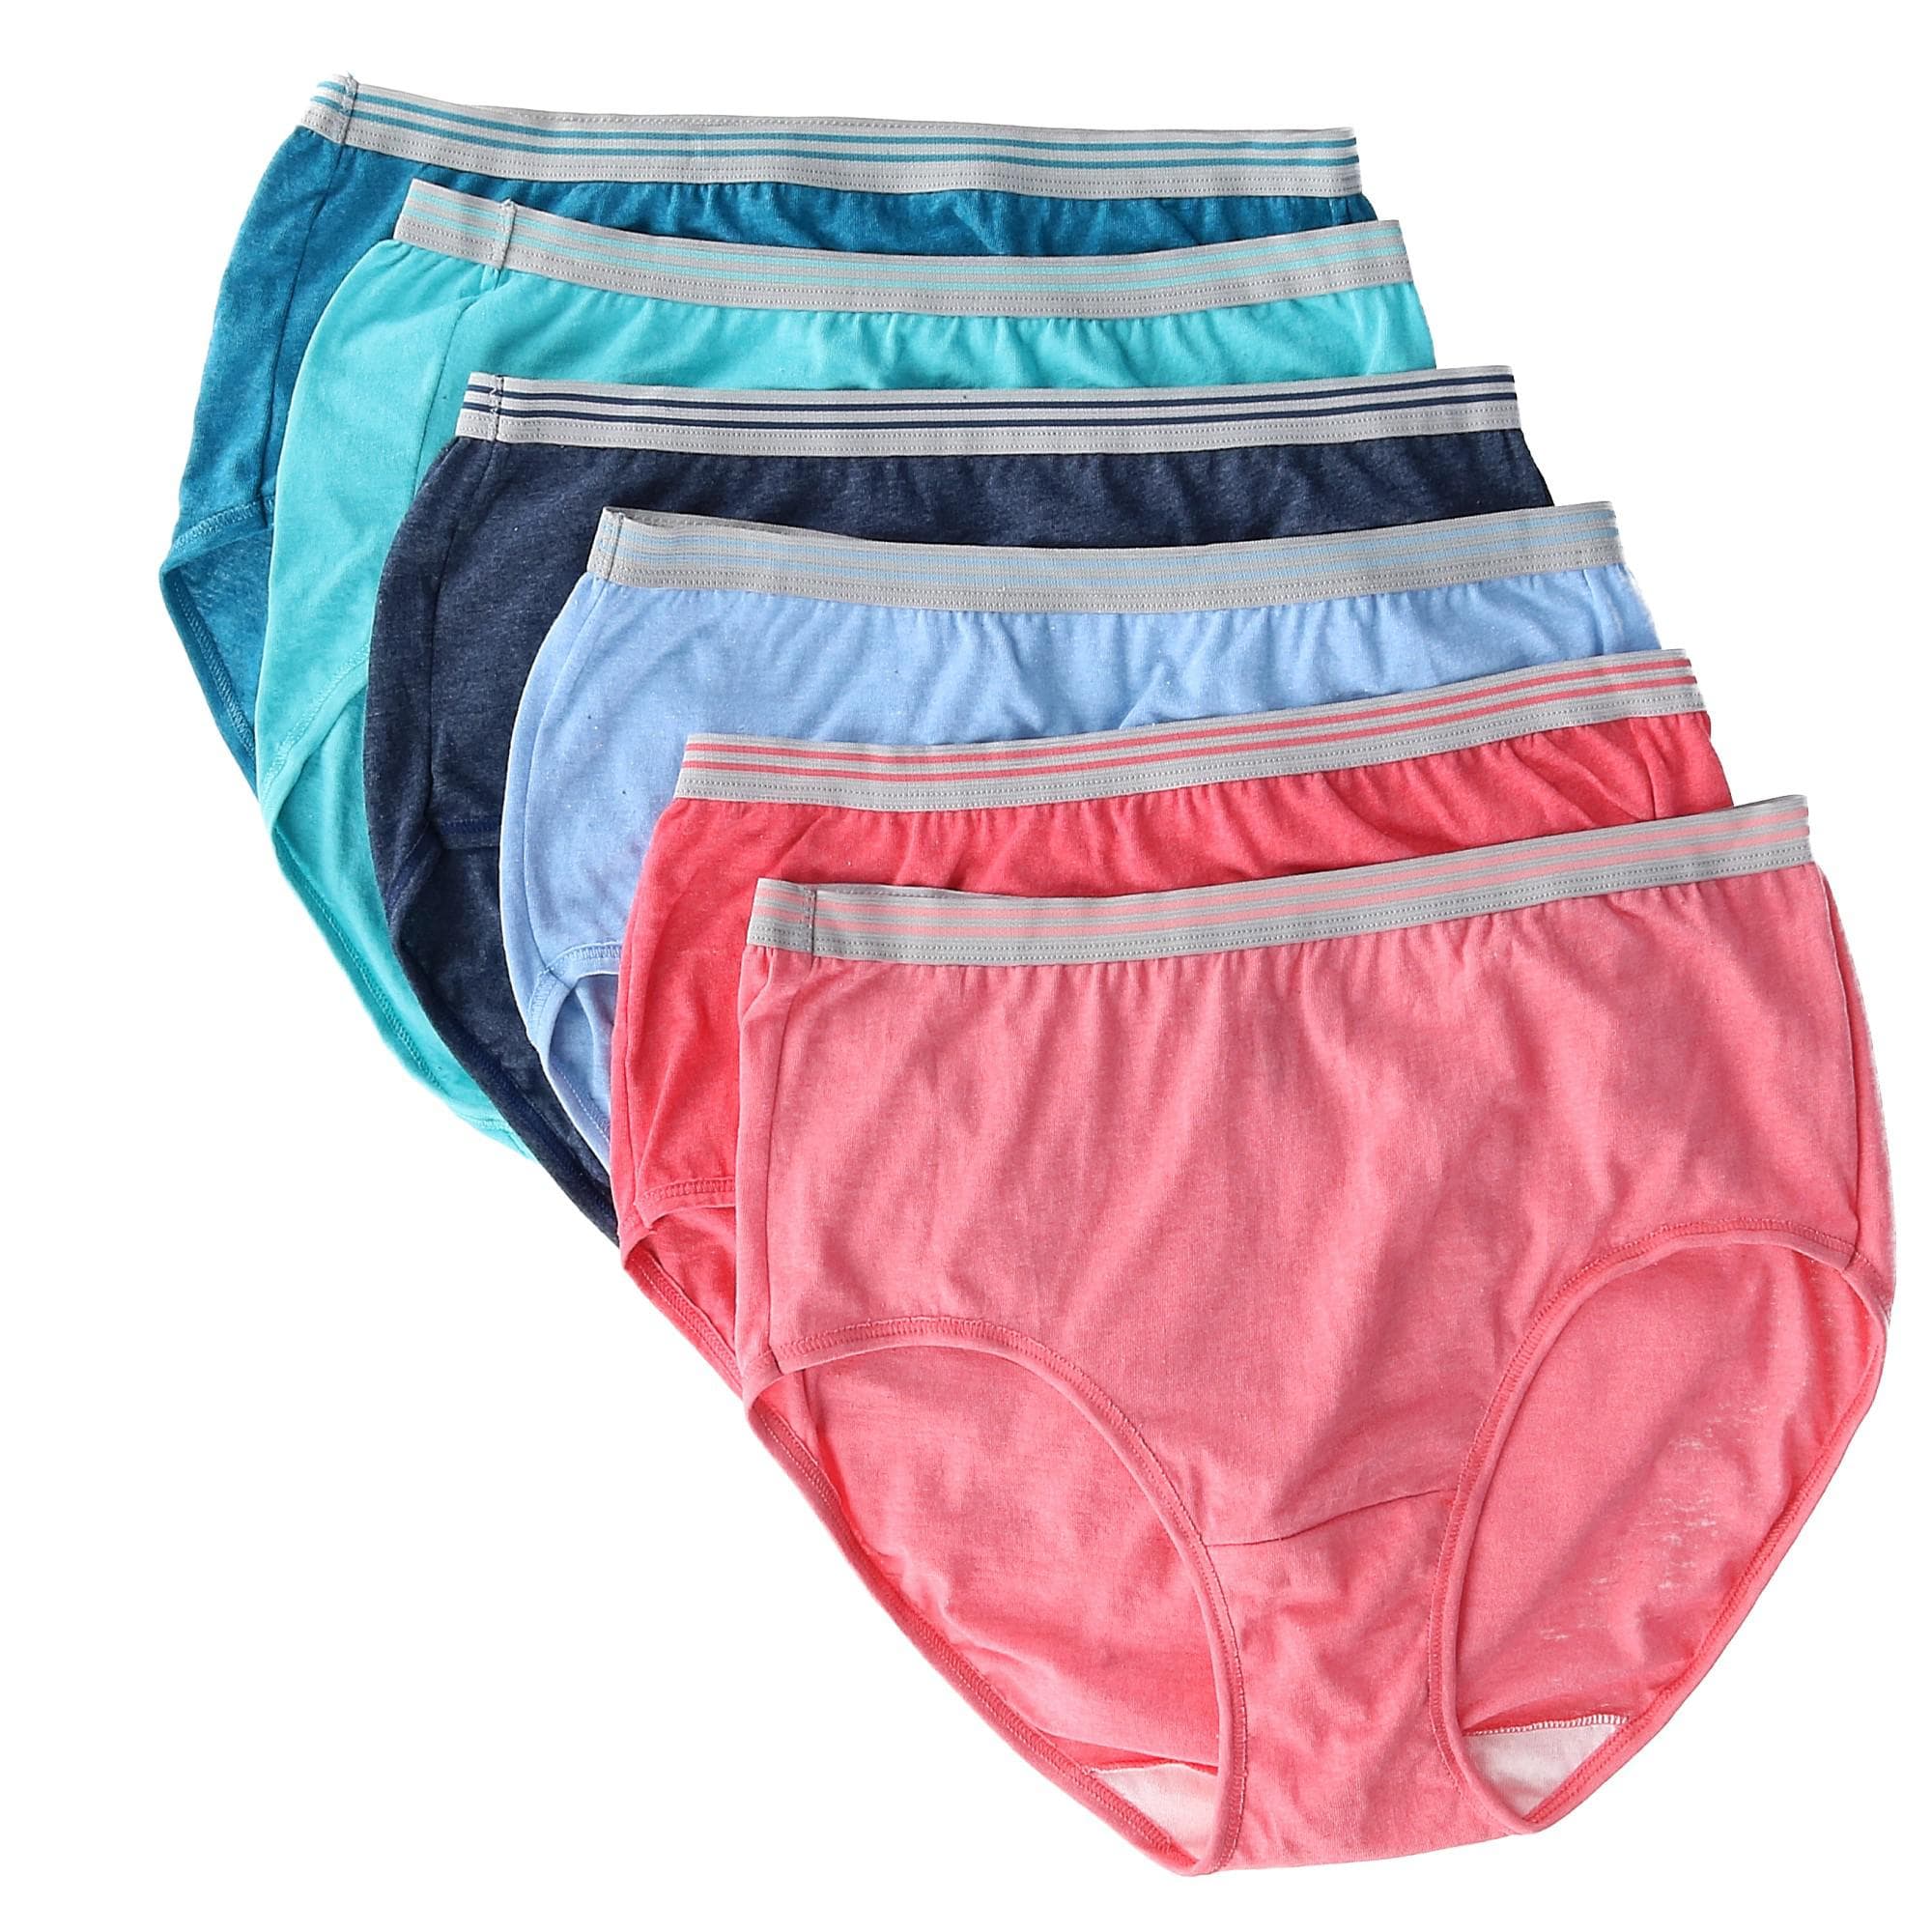 Women's Assorted Heather Brief Panties, 6 Pack 